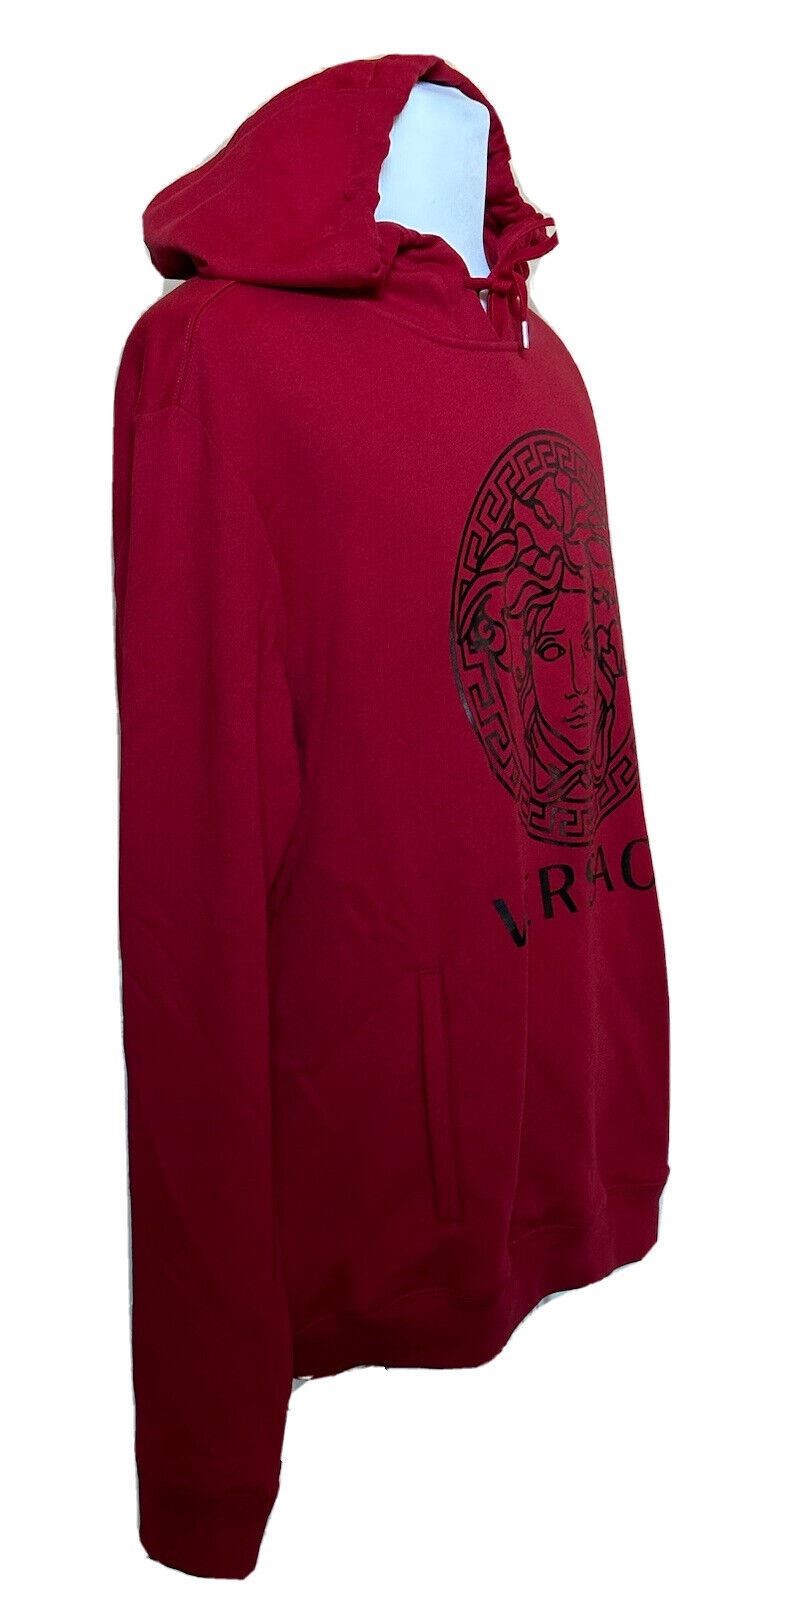 NWT $750 Versace Красный хлопковый свитшот с принтом Medusa и худи 4XL A89514S IT 